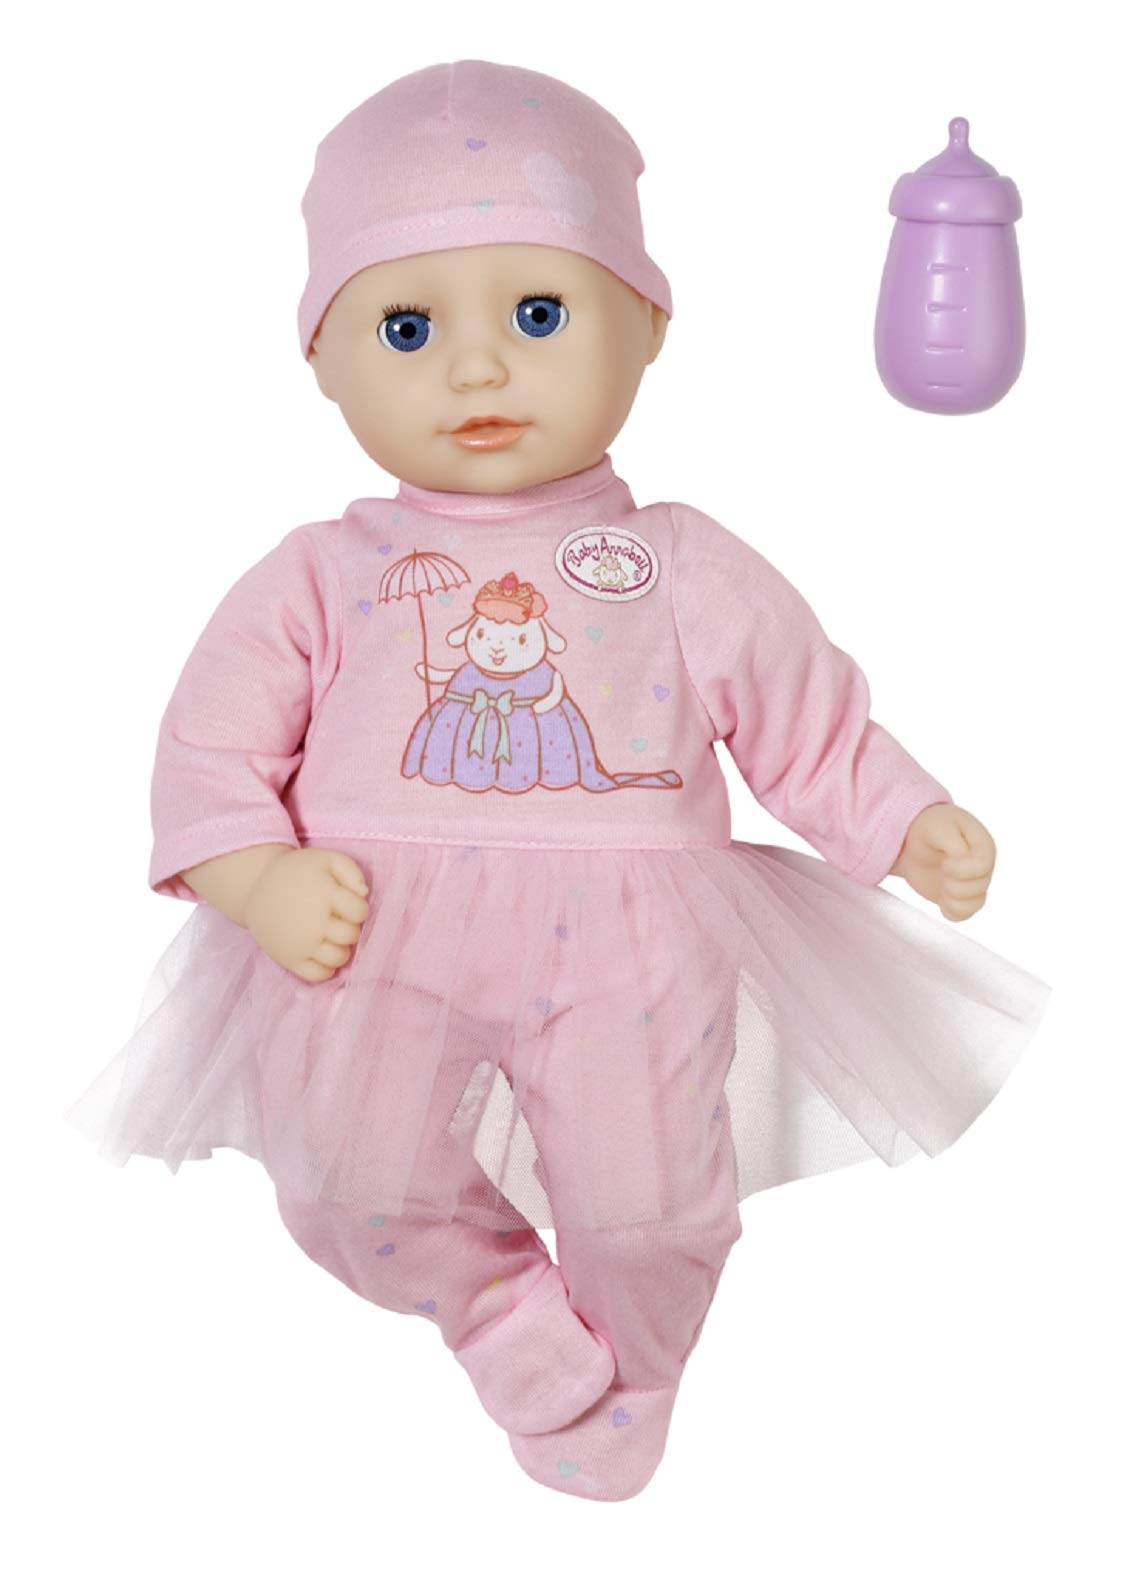 Baby Annabell Little Sweet Annabell, weiche Babypuppe mit Schlafaugen, 36 cm große Puppe, 705728 Zapf Creation